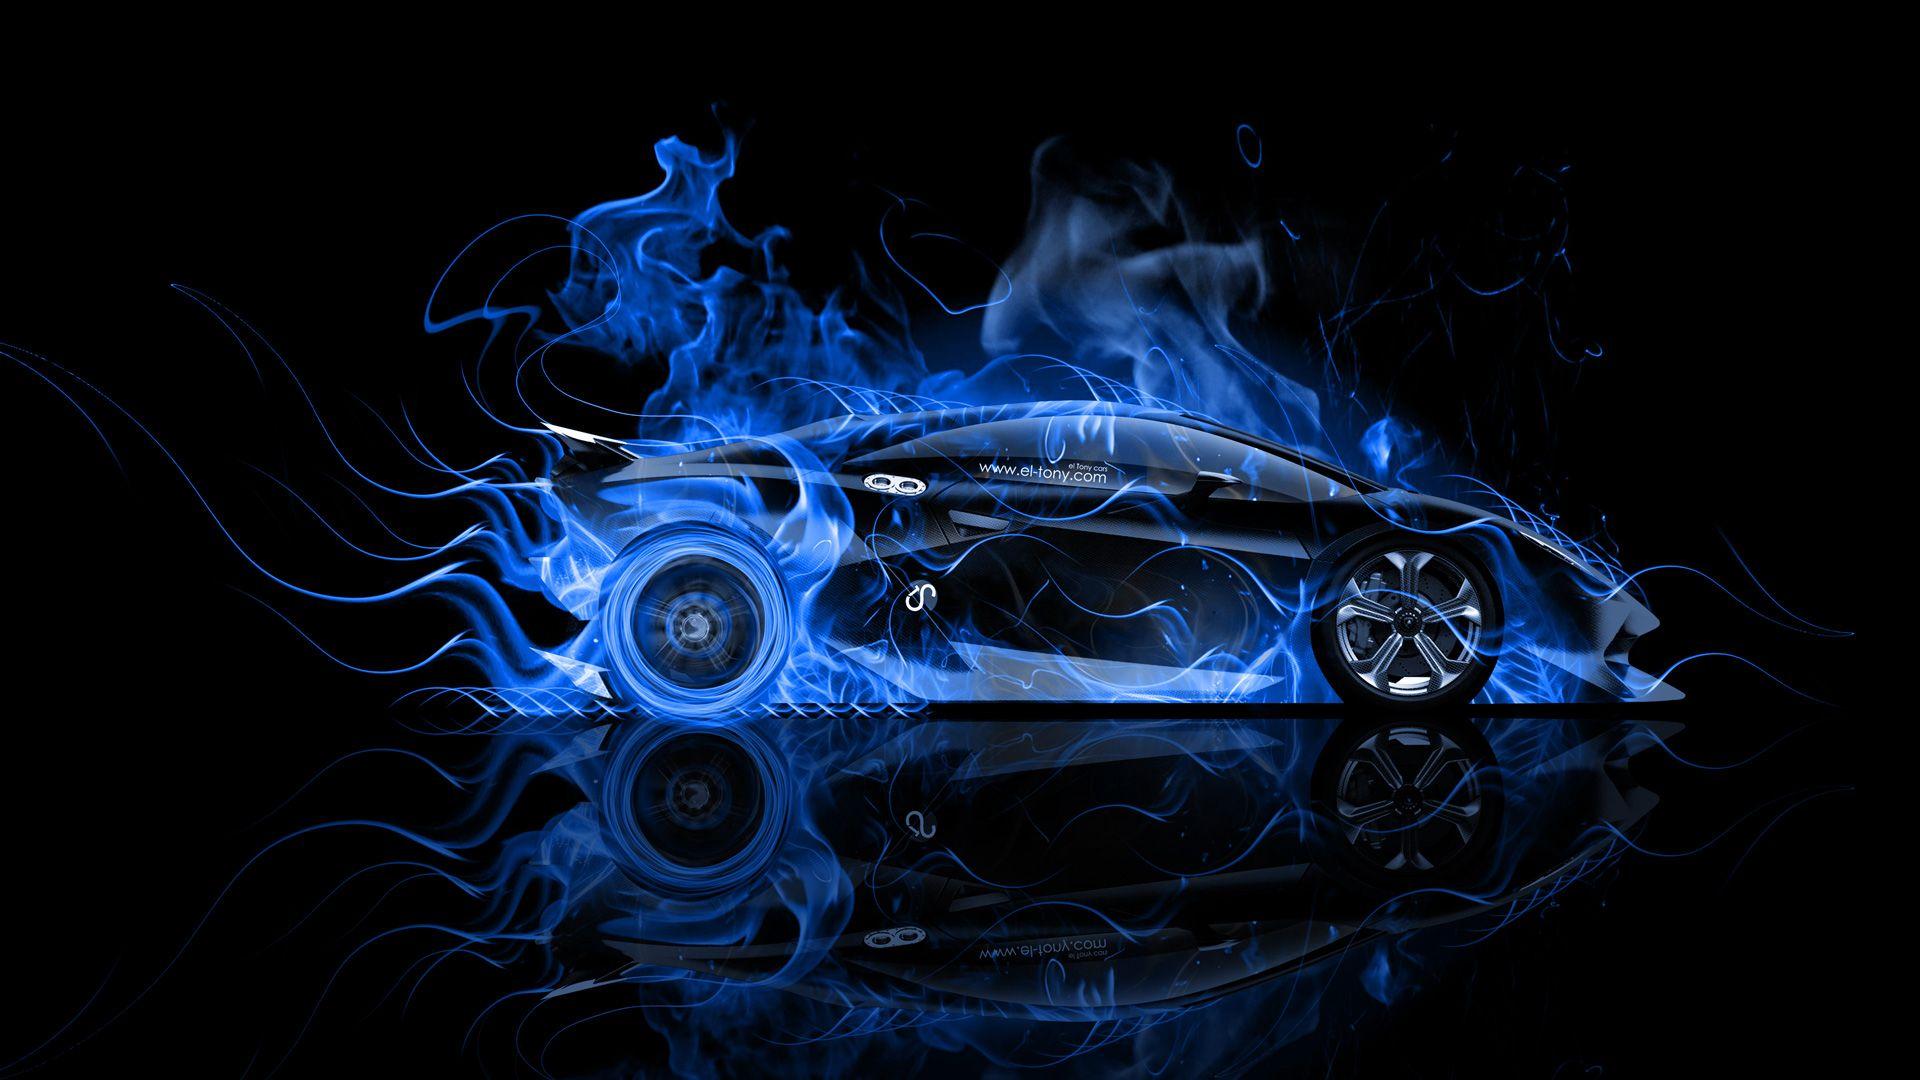 Blue Lamborghini Sesto Elemento Wallpapers - Top Free Blue Lamborghini ...